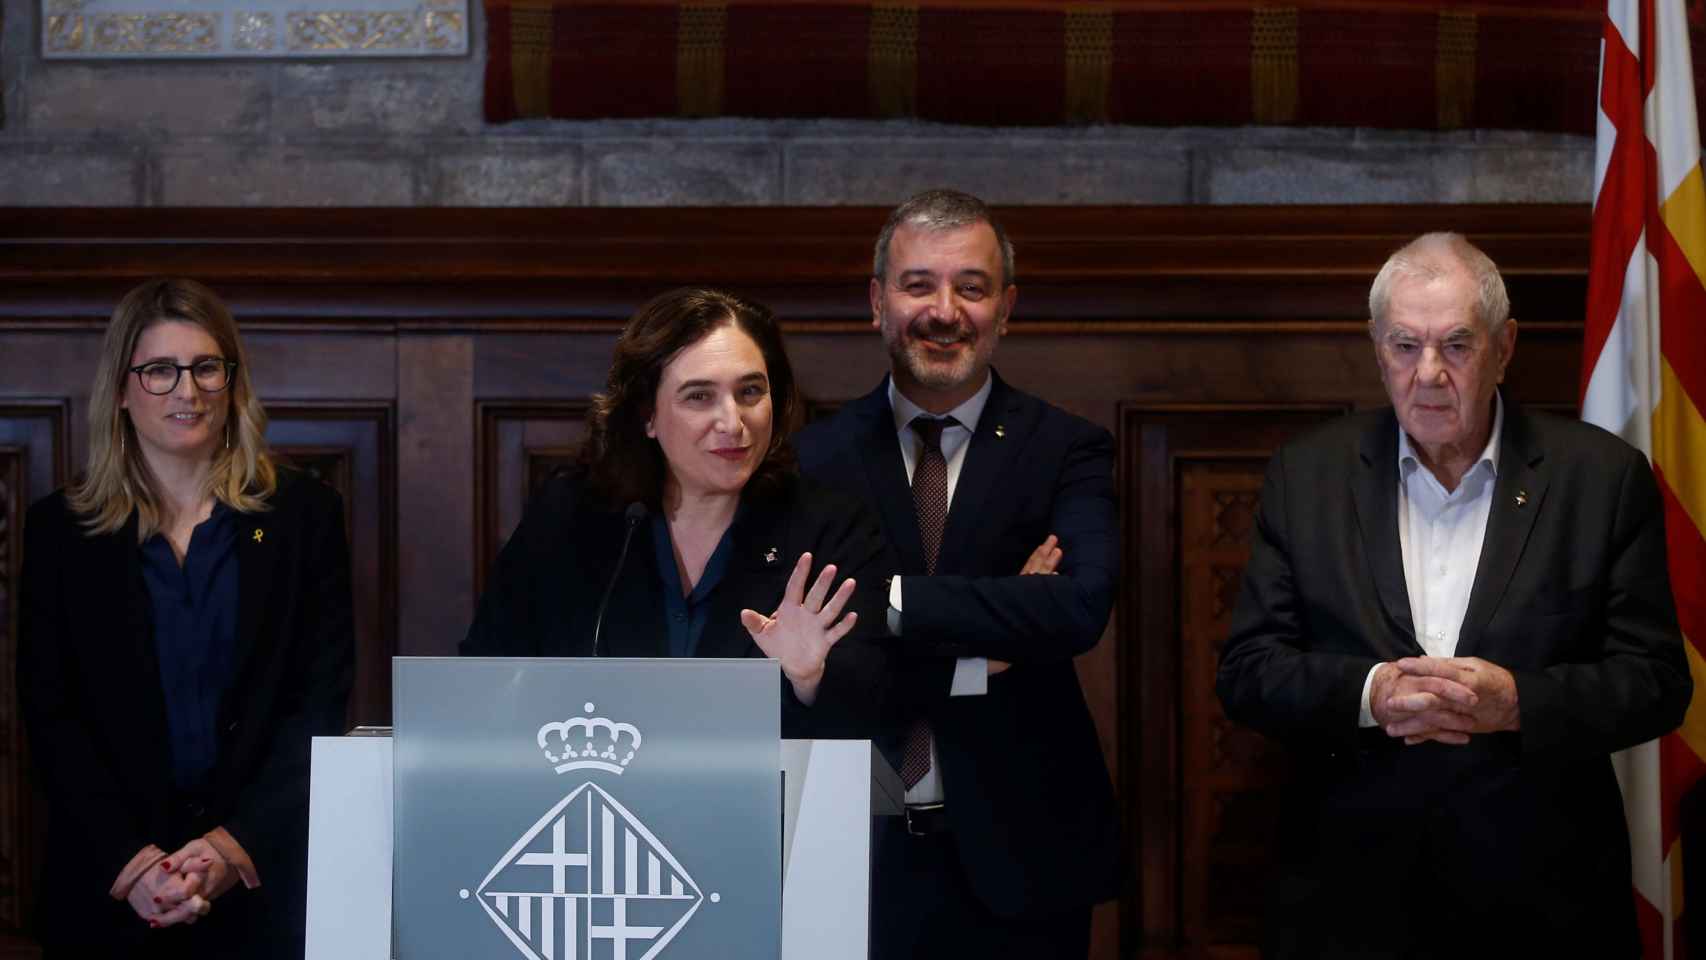 La alcaldesa de Barcelona, Ada Colau; el primer teniente de alcalde, Jaume Collboni; y los líderes municipales de ERC, Ernest Maragall, y de JxCAT, Elsa Artadi, en la presentación del